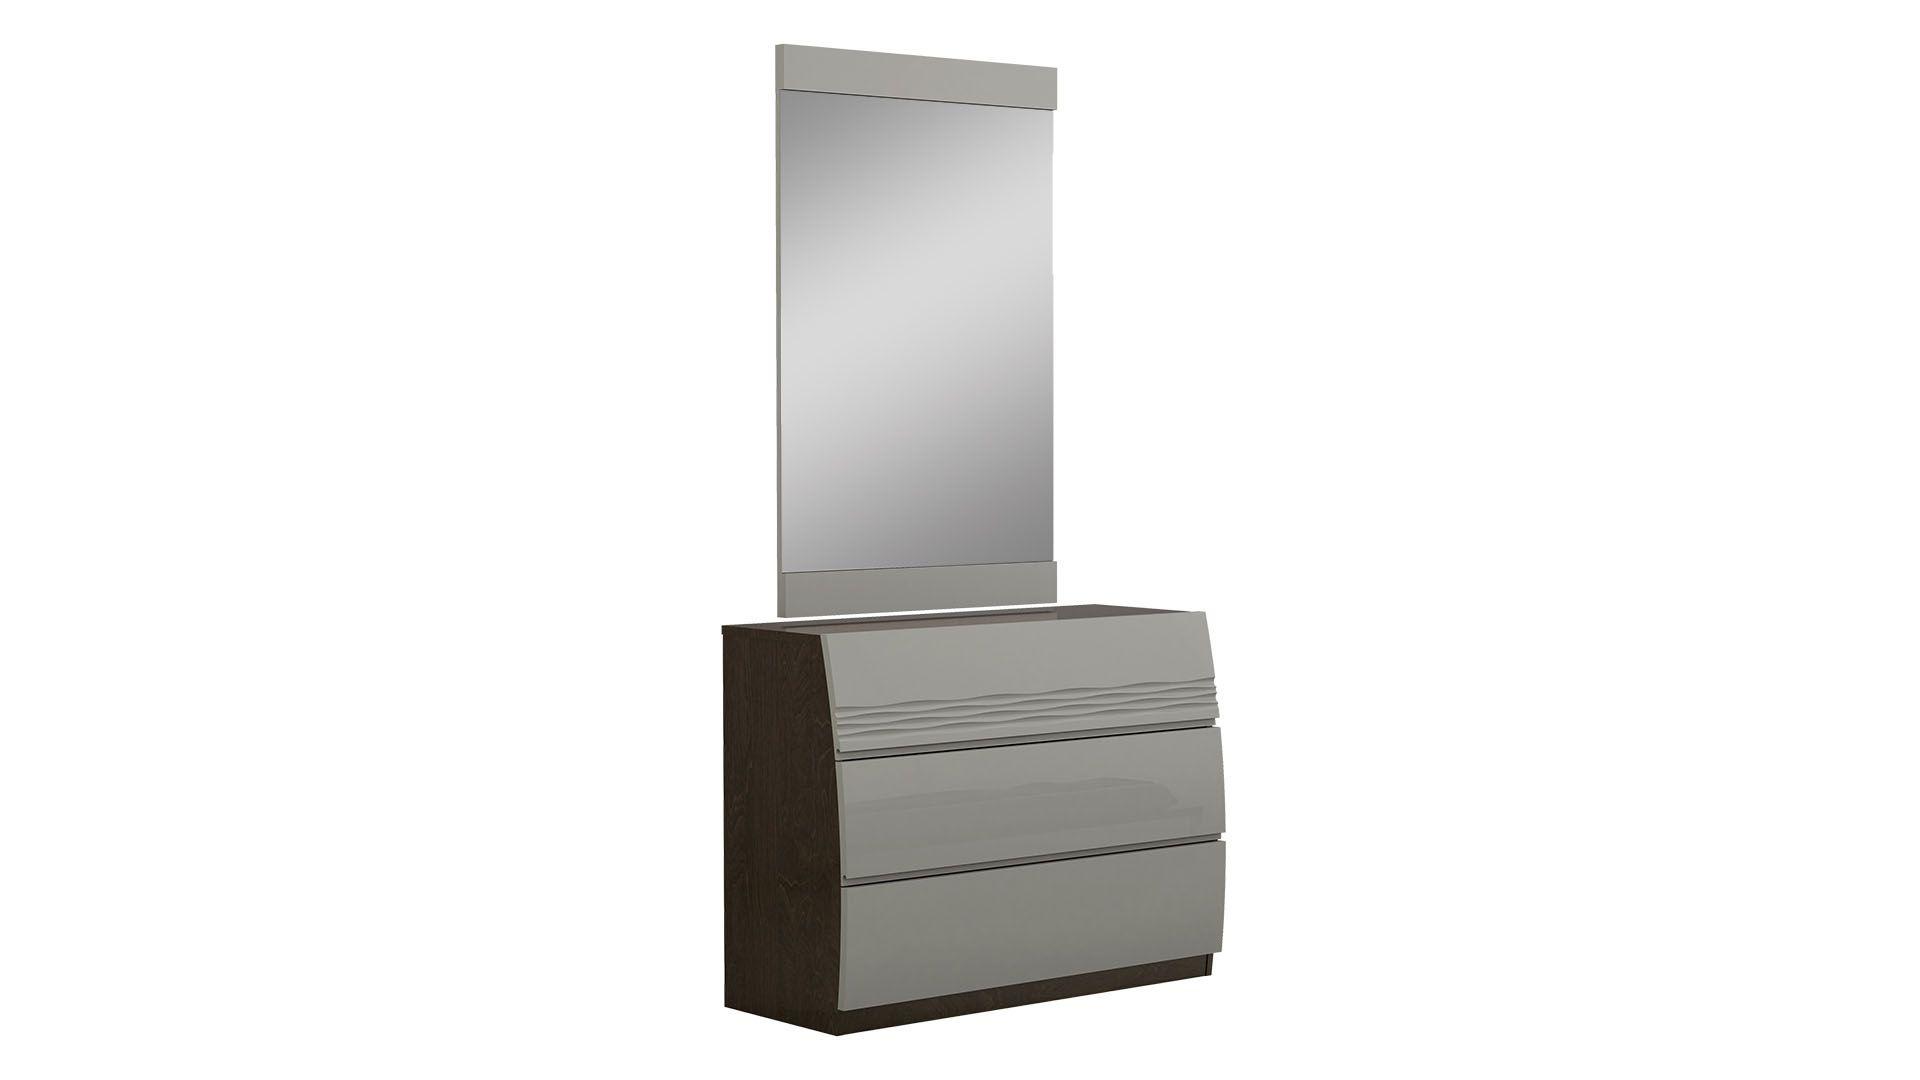 

                    
American Eagle Furniture P102-BED-EK Platform Bedroom Set Light Gray/Brown  Purchase 
